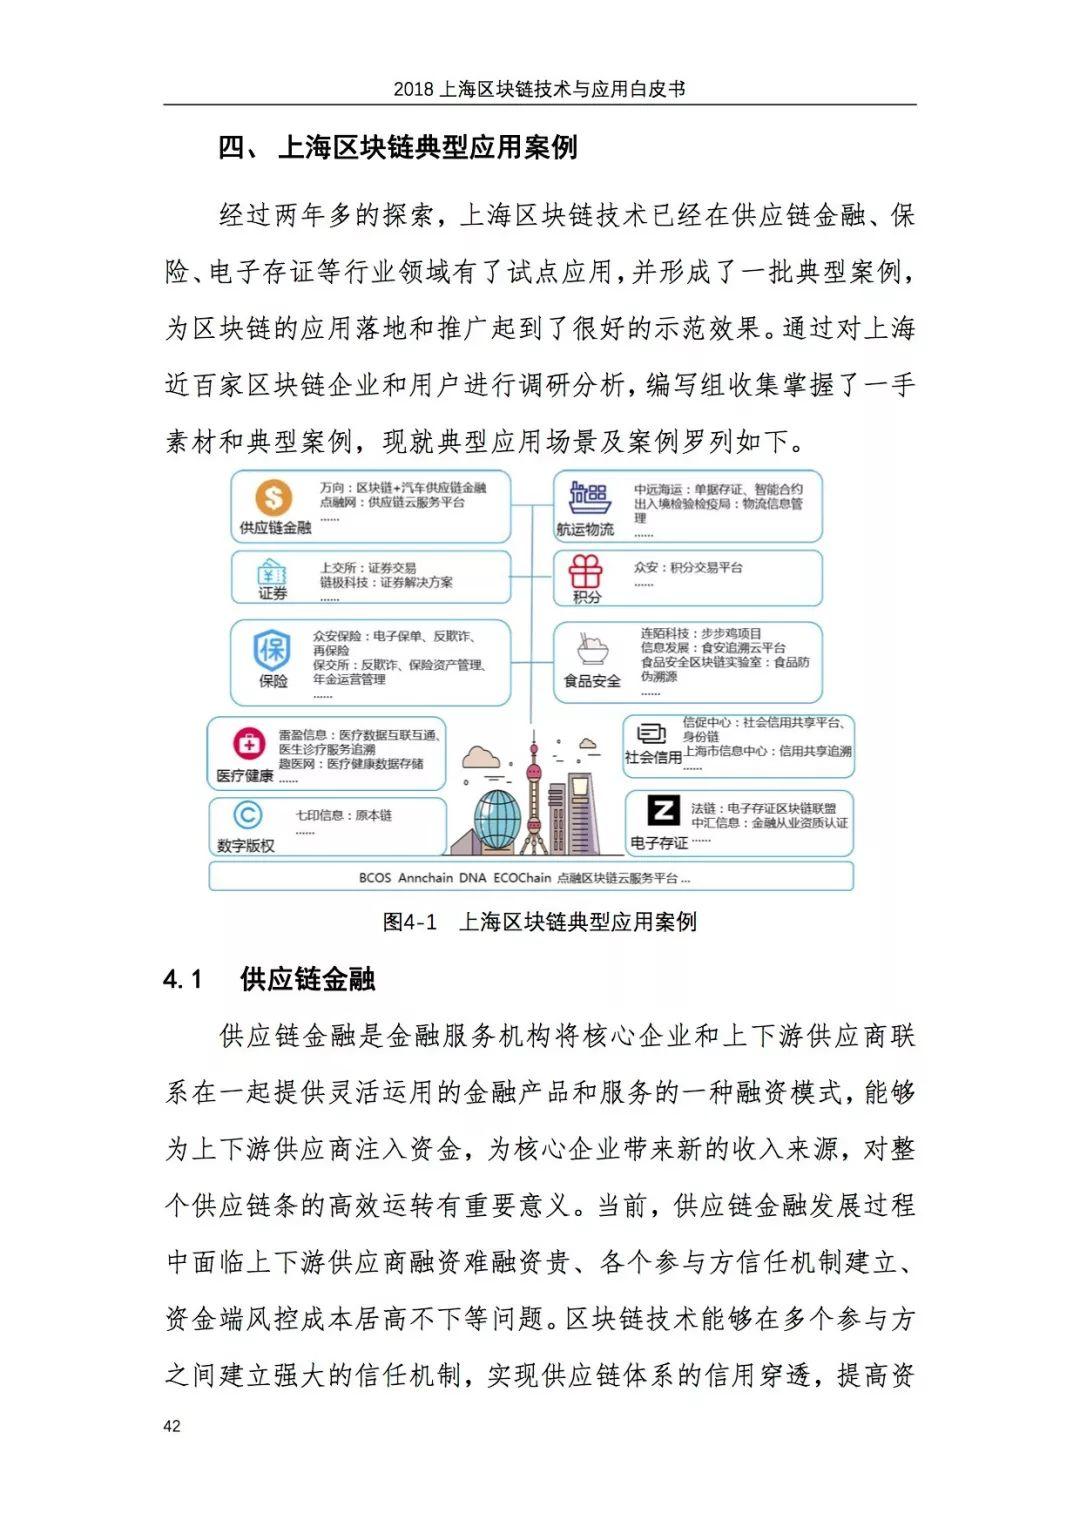 报告下载 | 2018上海区块链技术与应用白皮书